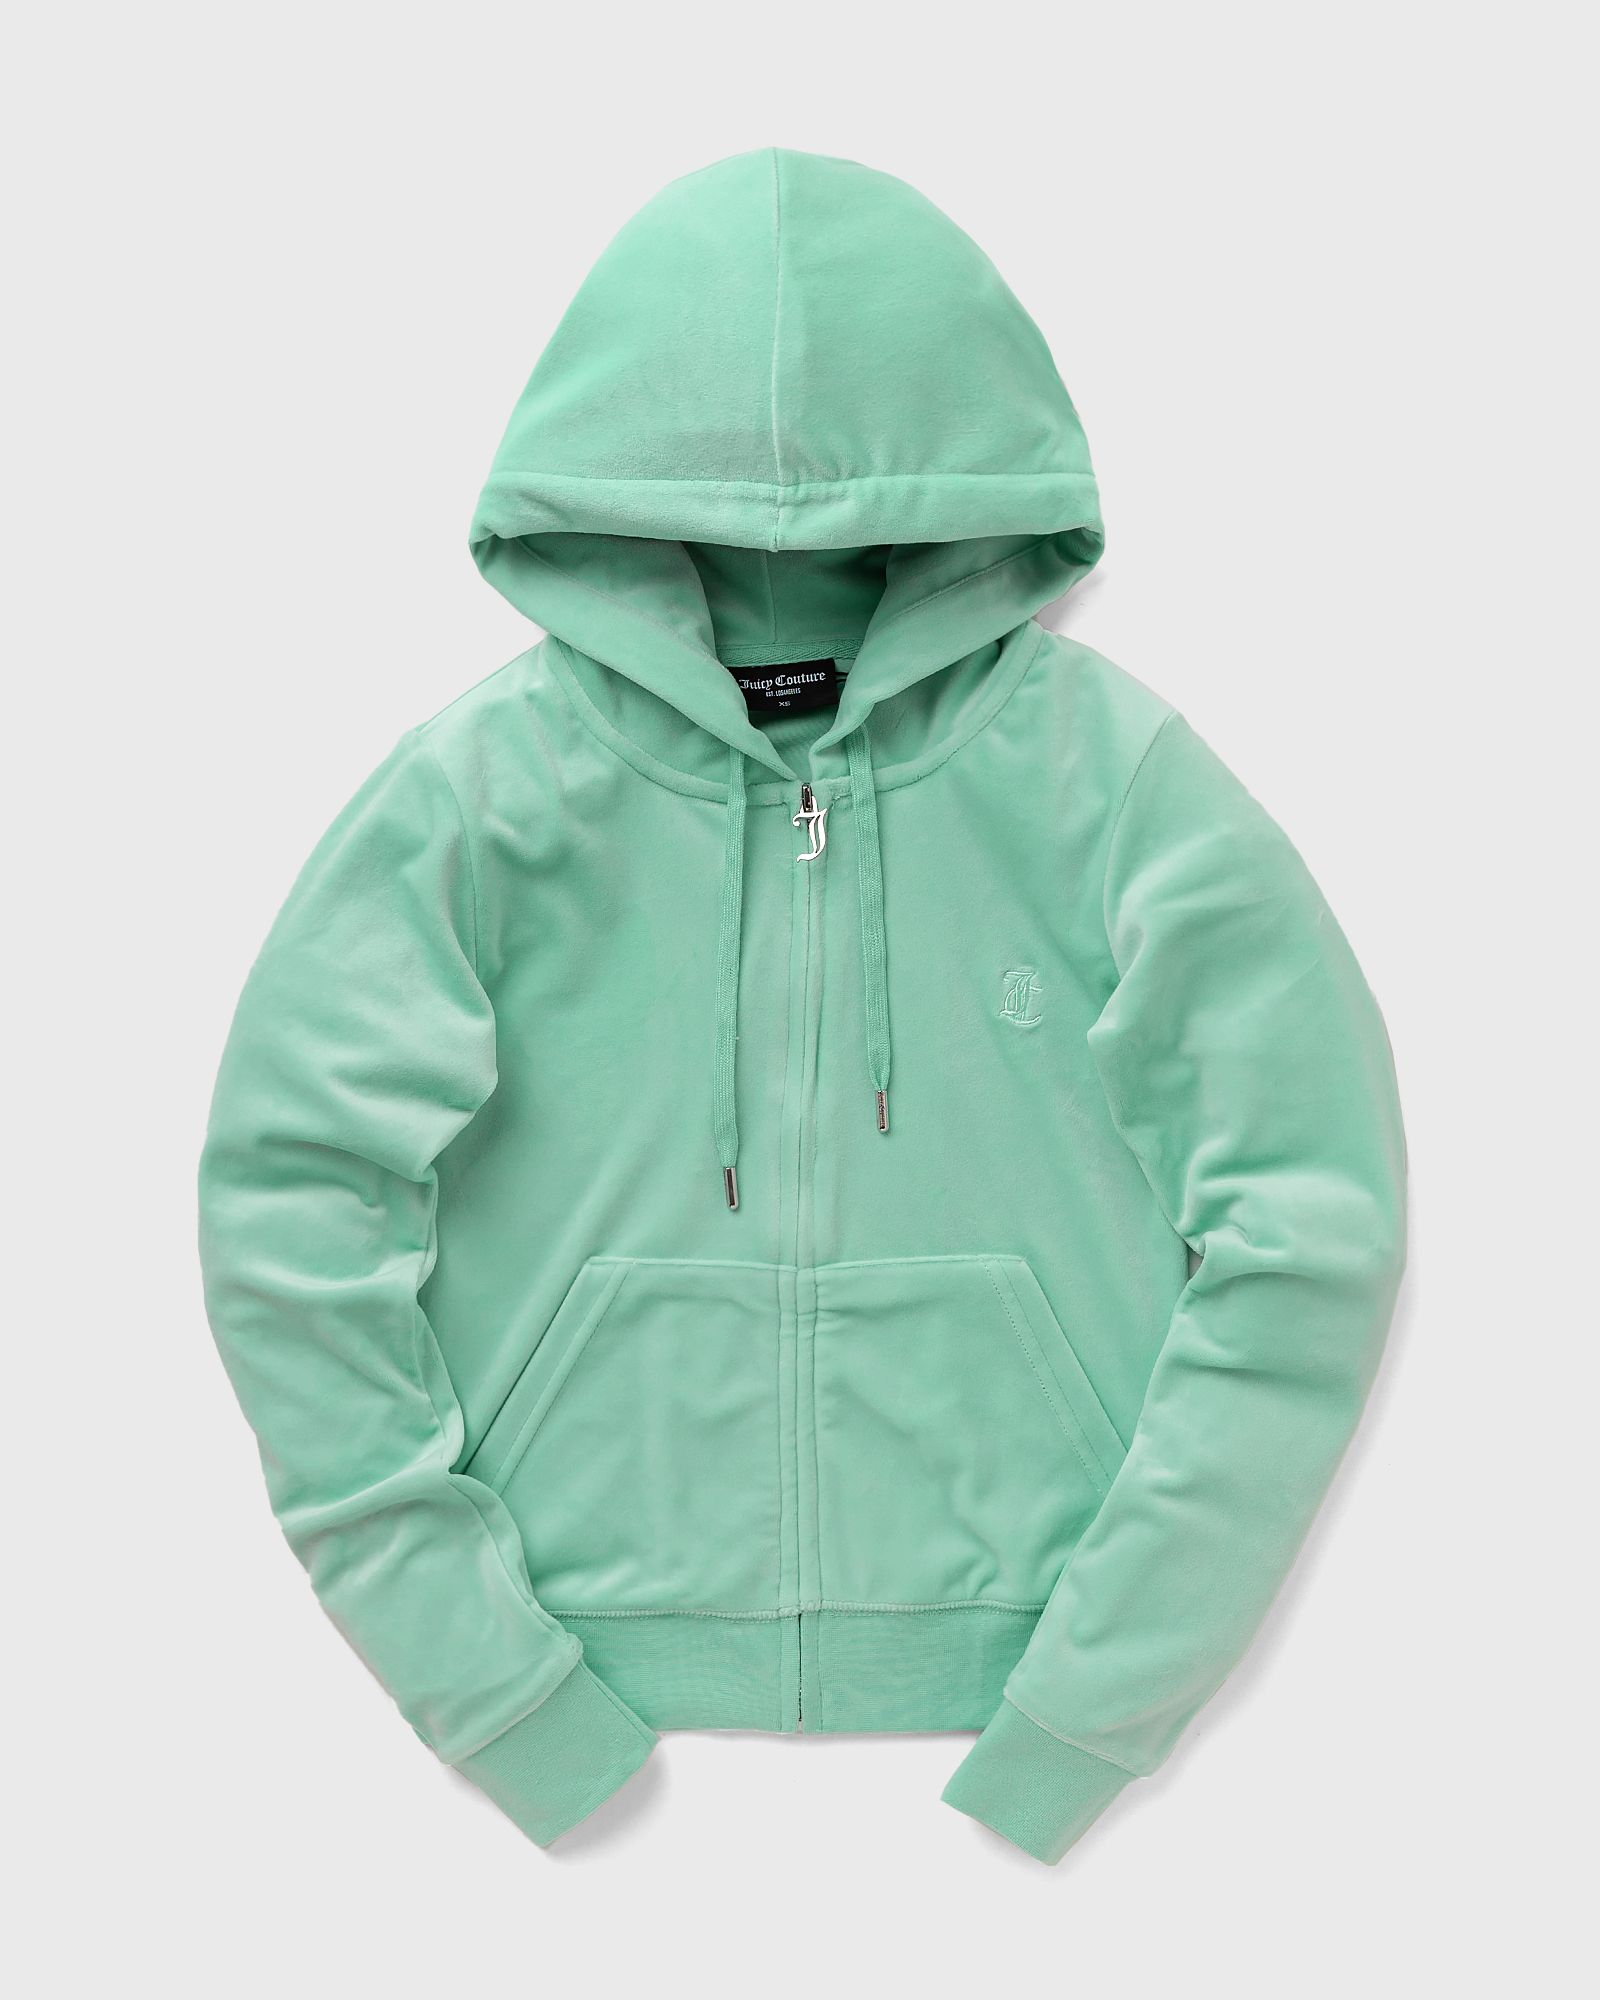 Juicy Couture - classic velour robertson zip hoodie women hoodies|zippers green in größe:m